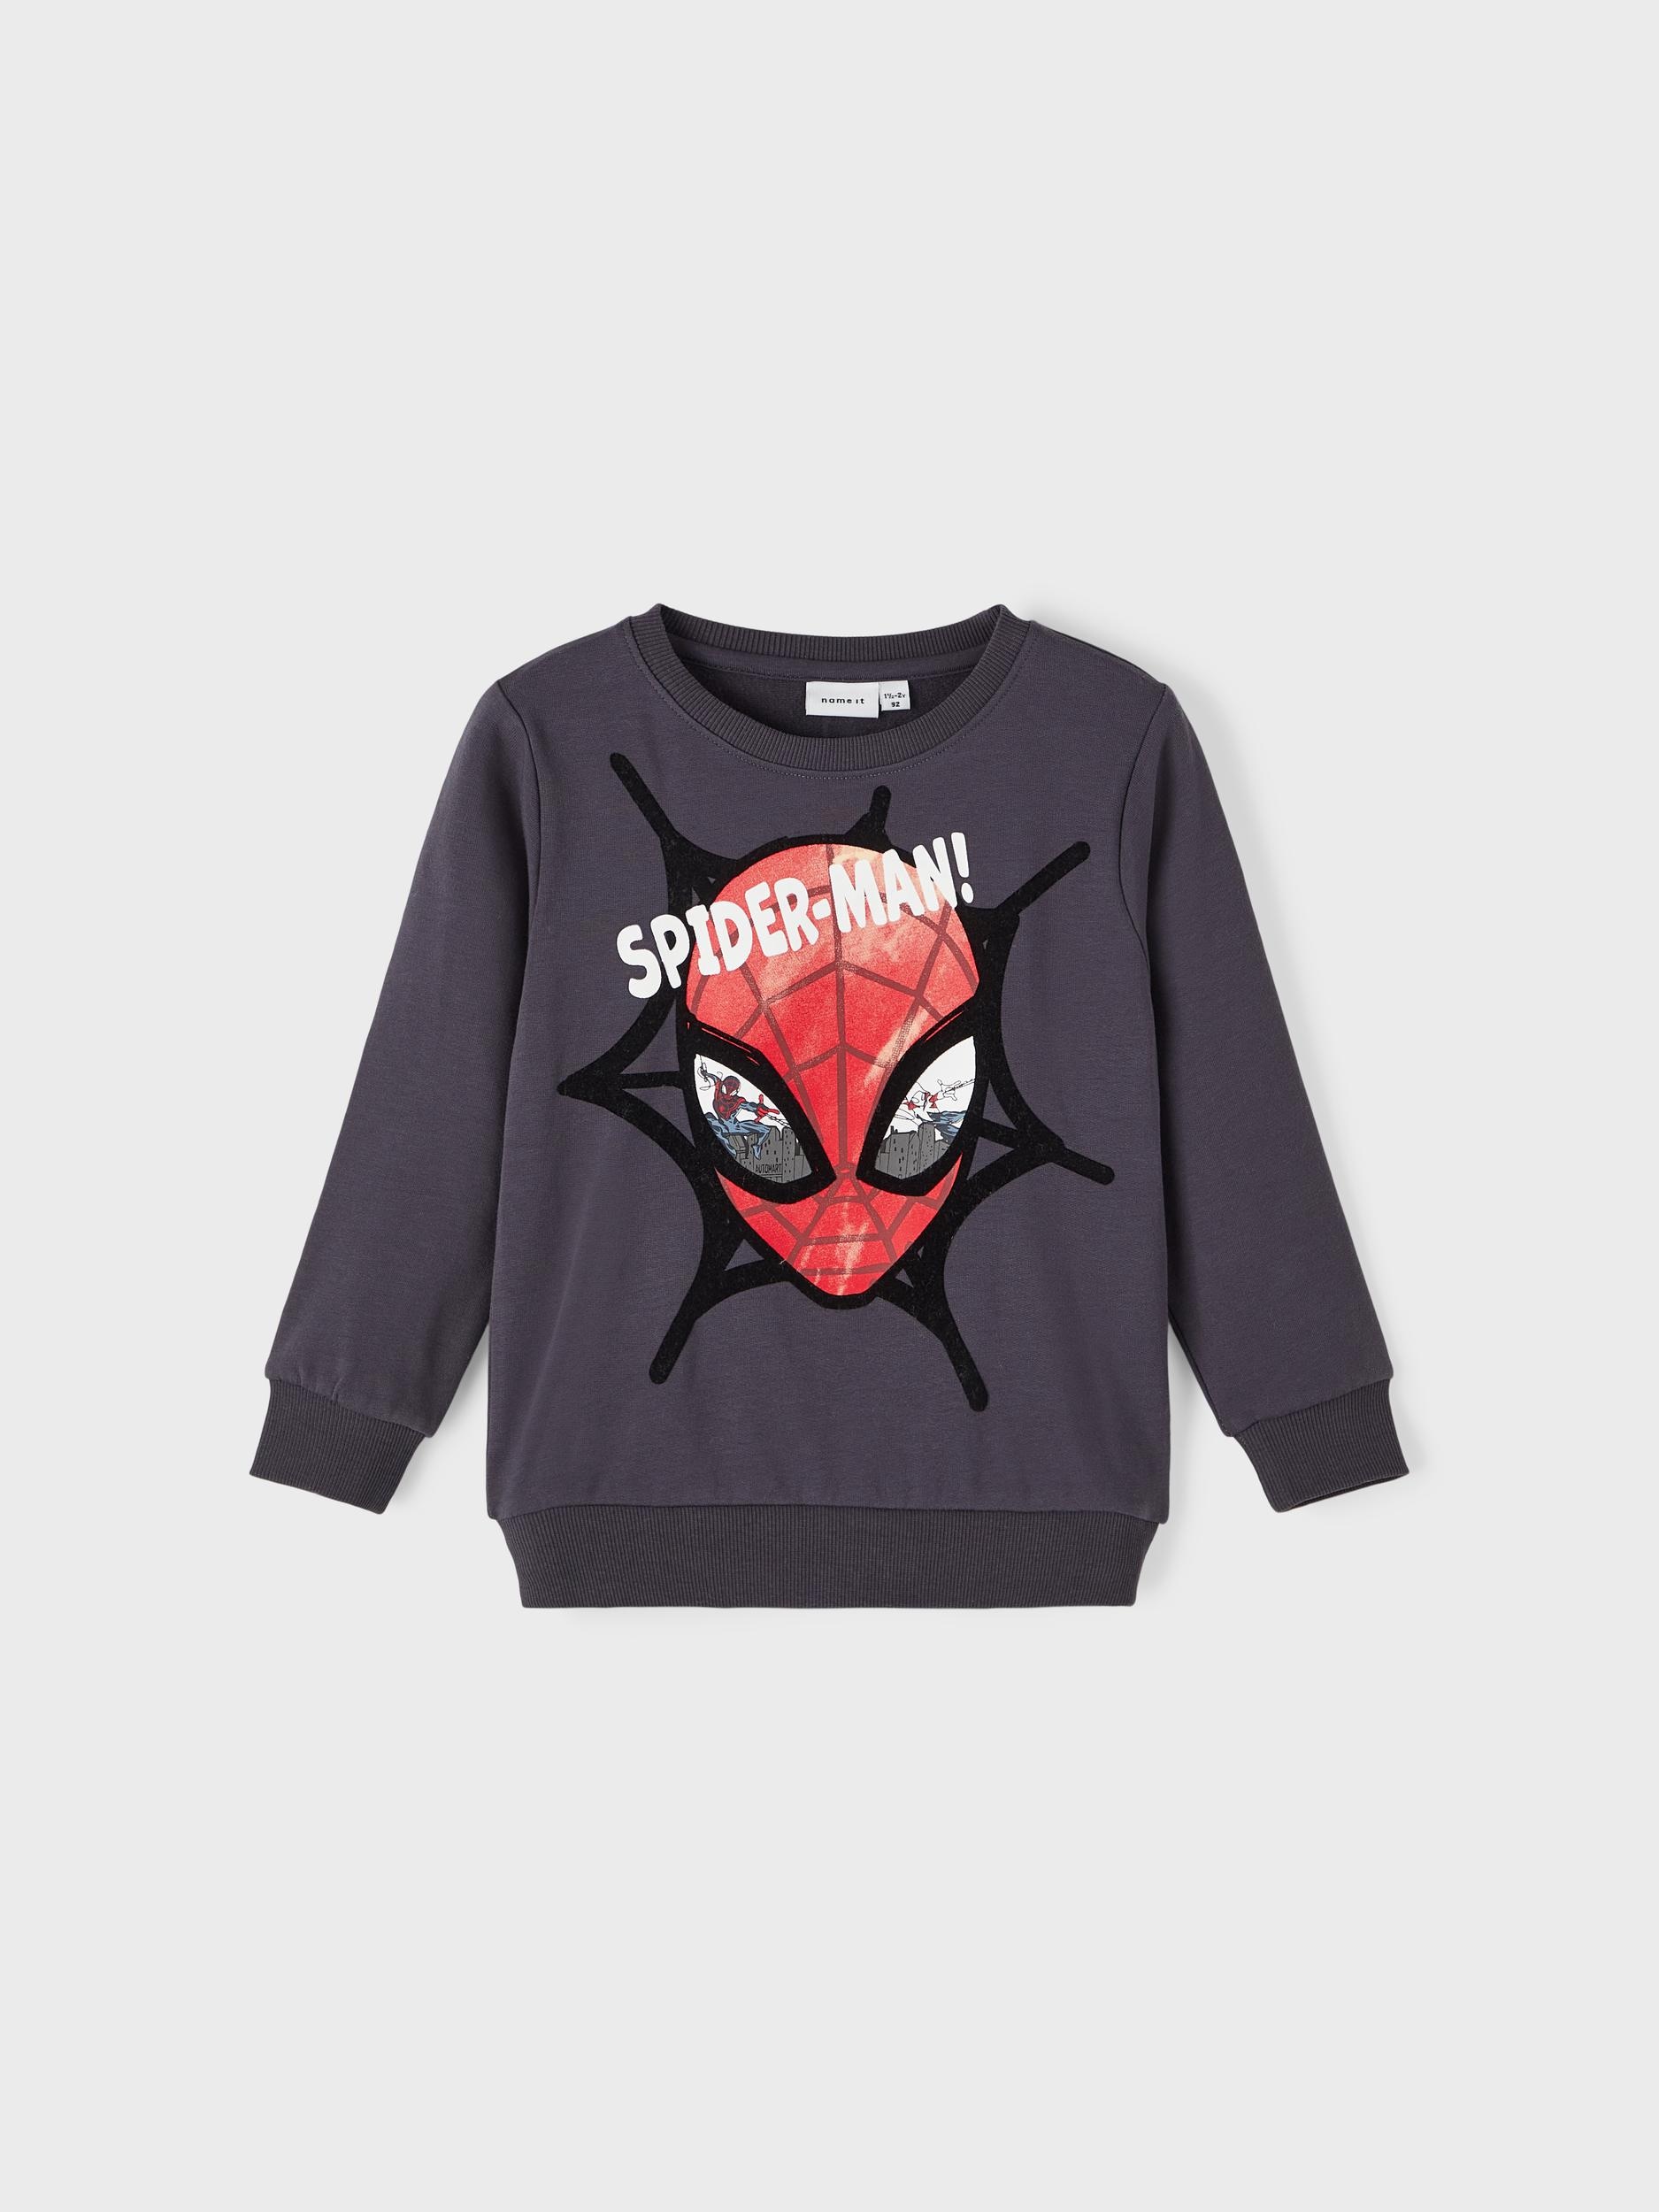 SPIDERMAN | Black It Sweatshirt Friday SWEAT MAR« »NMMSVENDE Name BAUR BRU